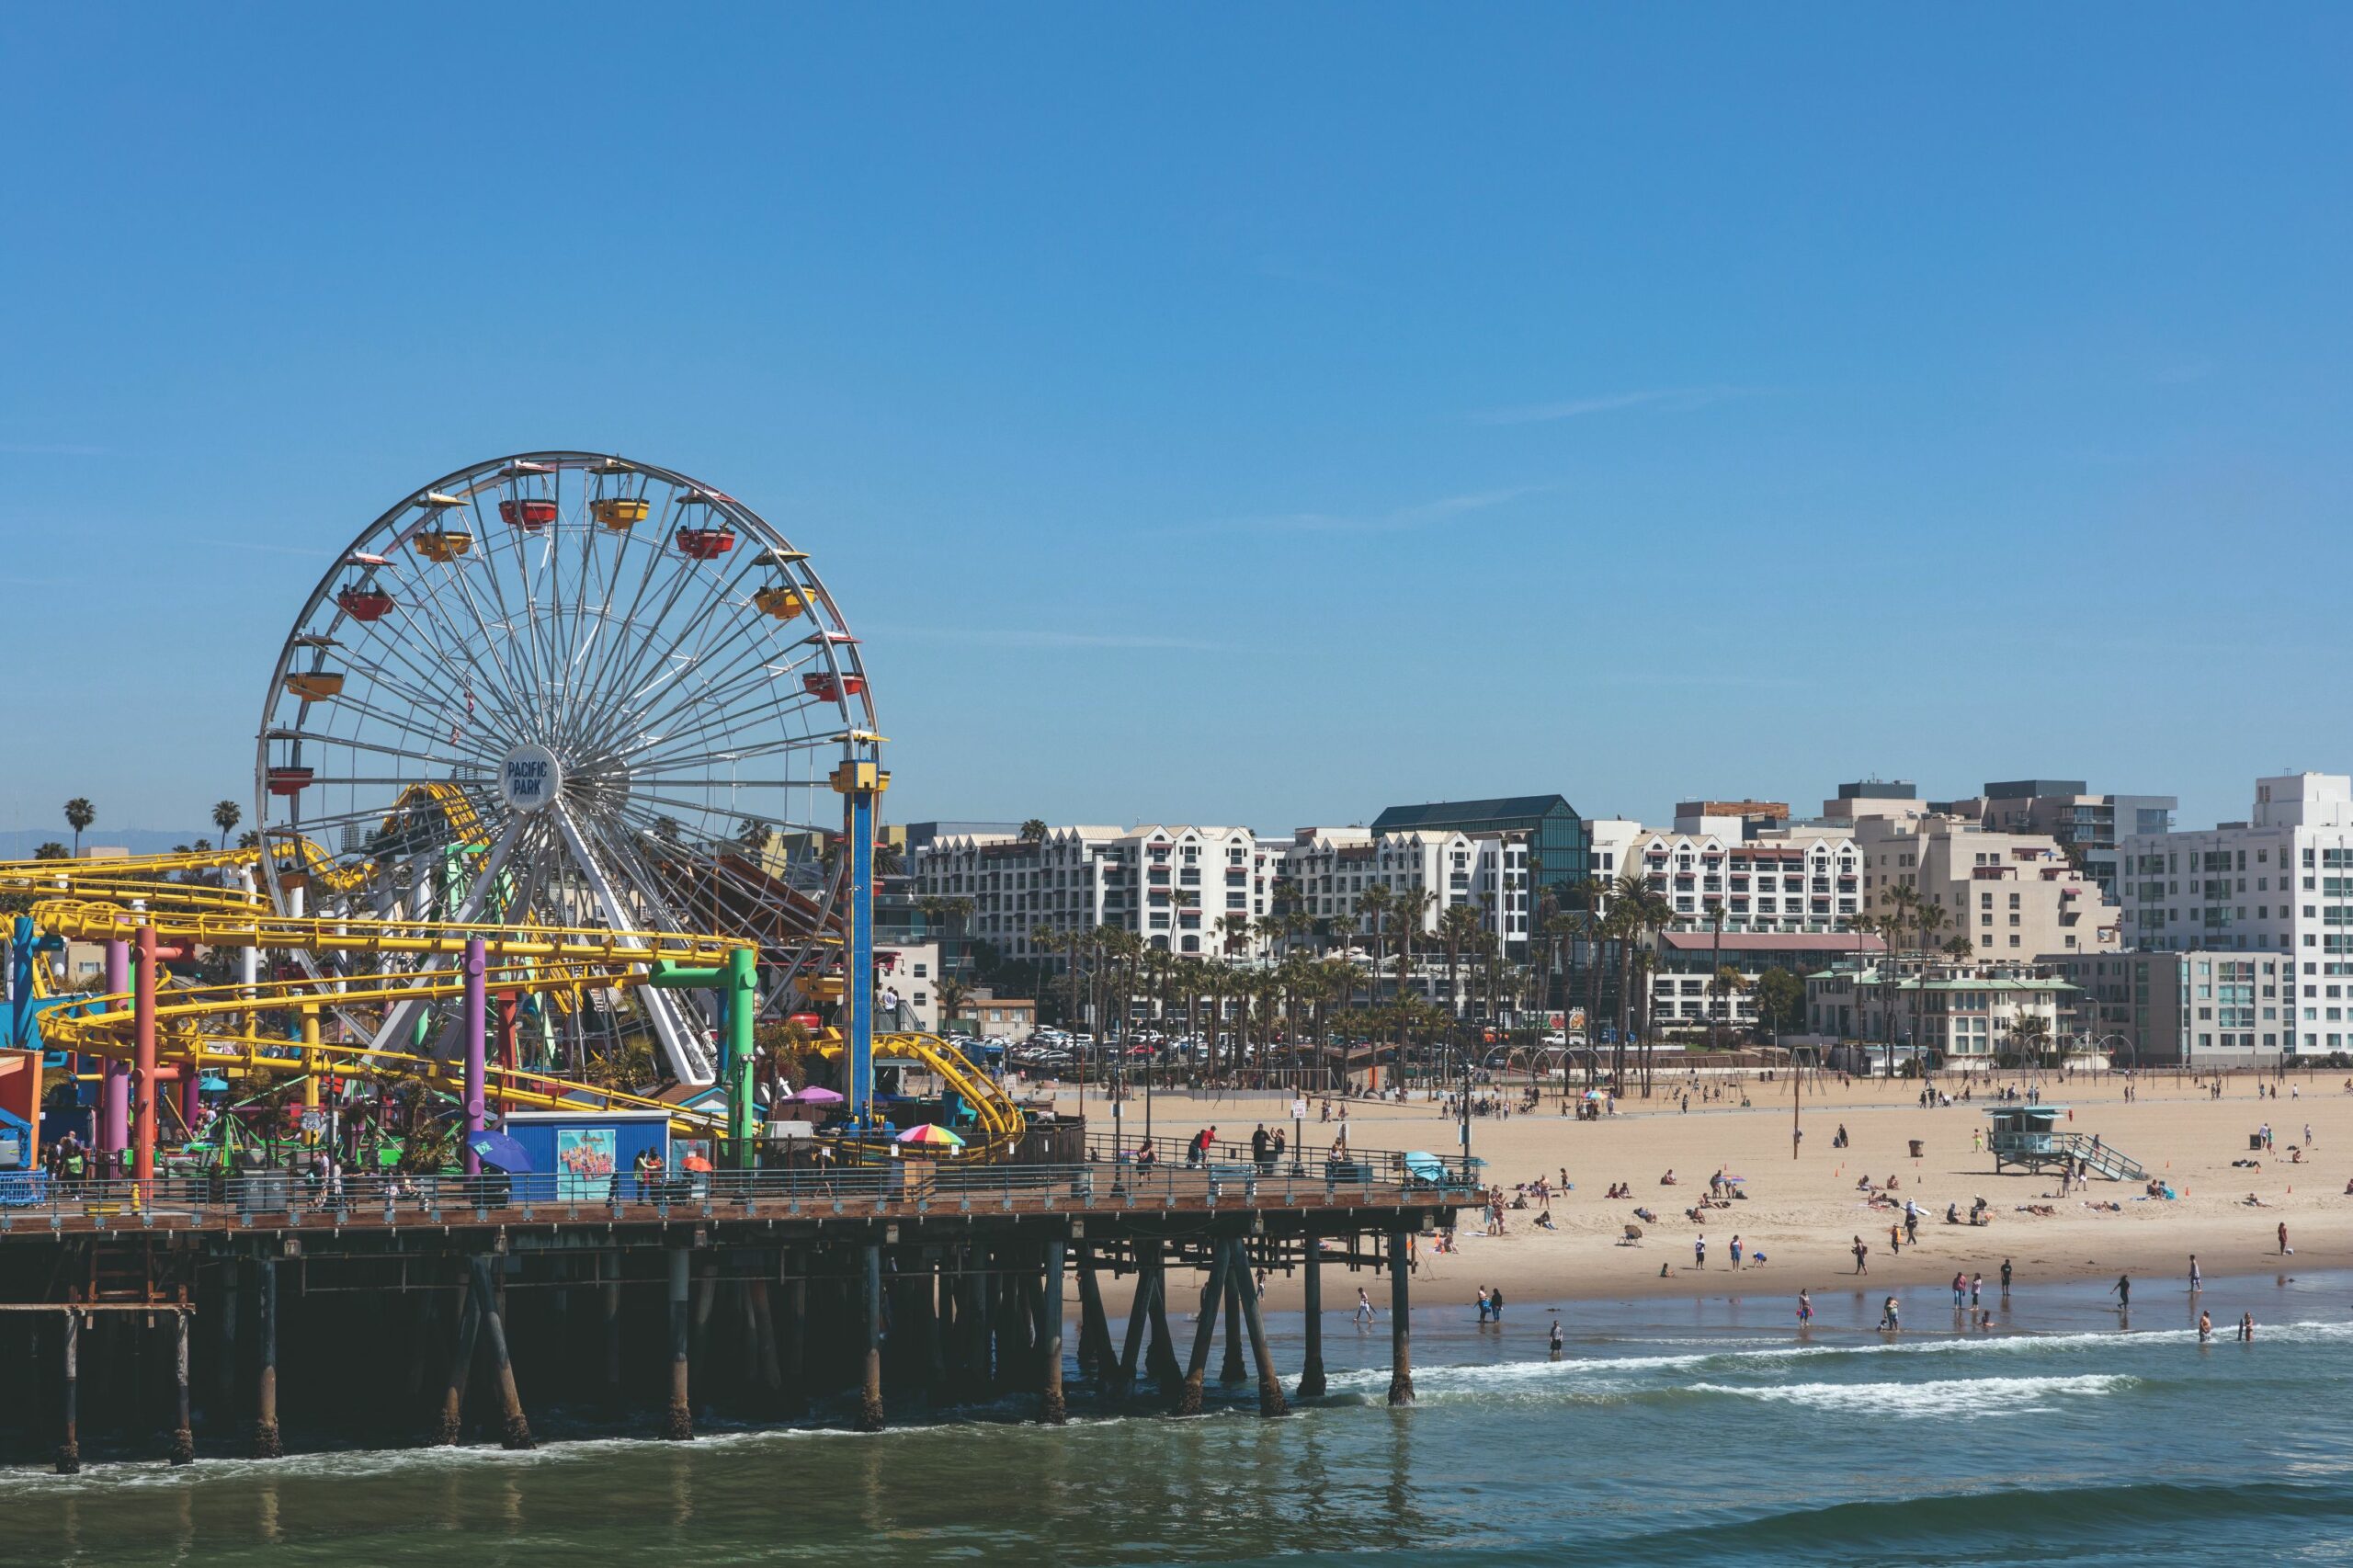 Beliebtes Touristenziel: Das Riesenrad am Santa Monica Pier.